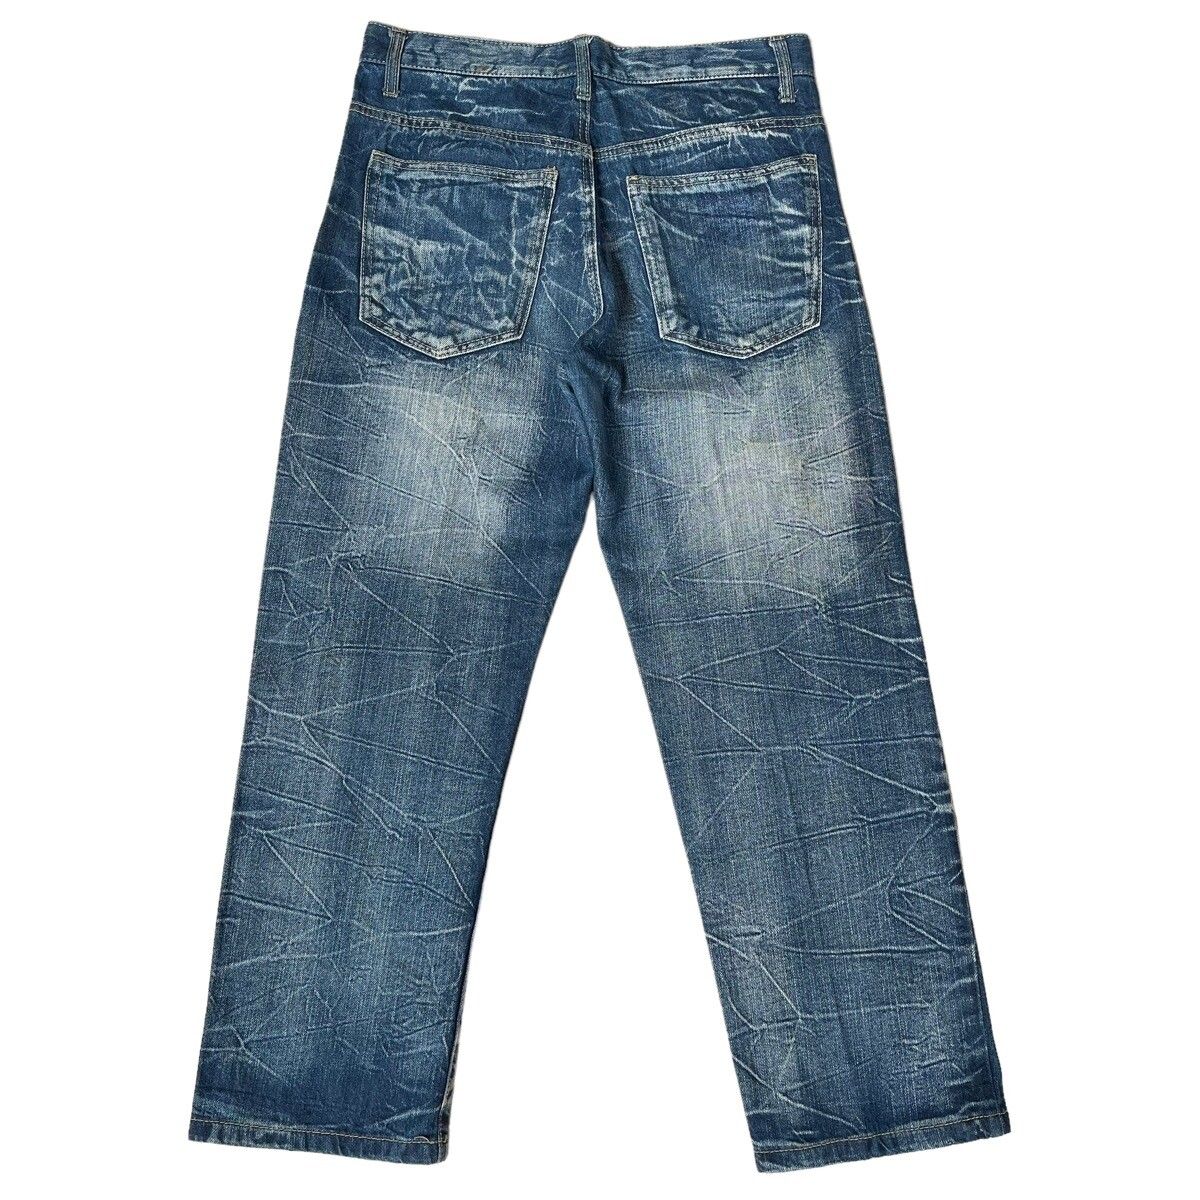 Japanase Unbrand Denim Flare Jeans 30 - 6